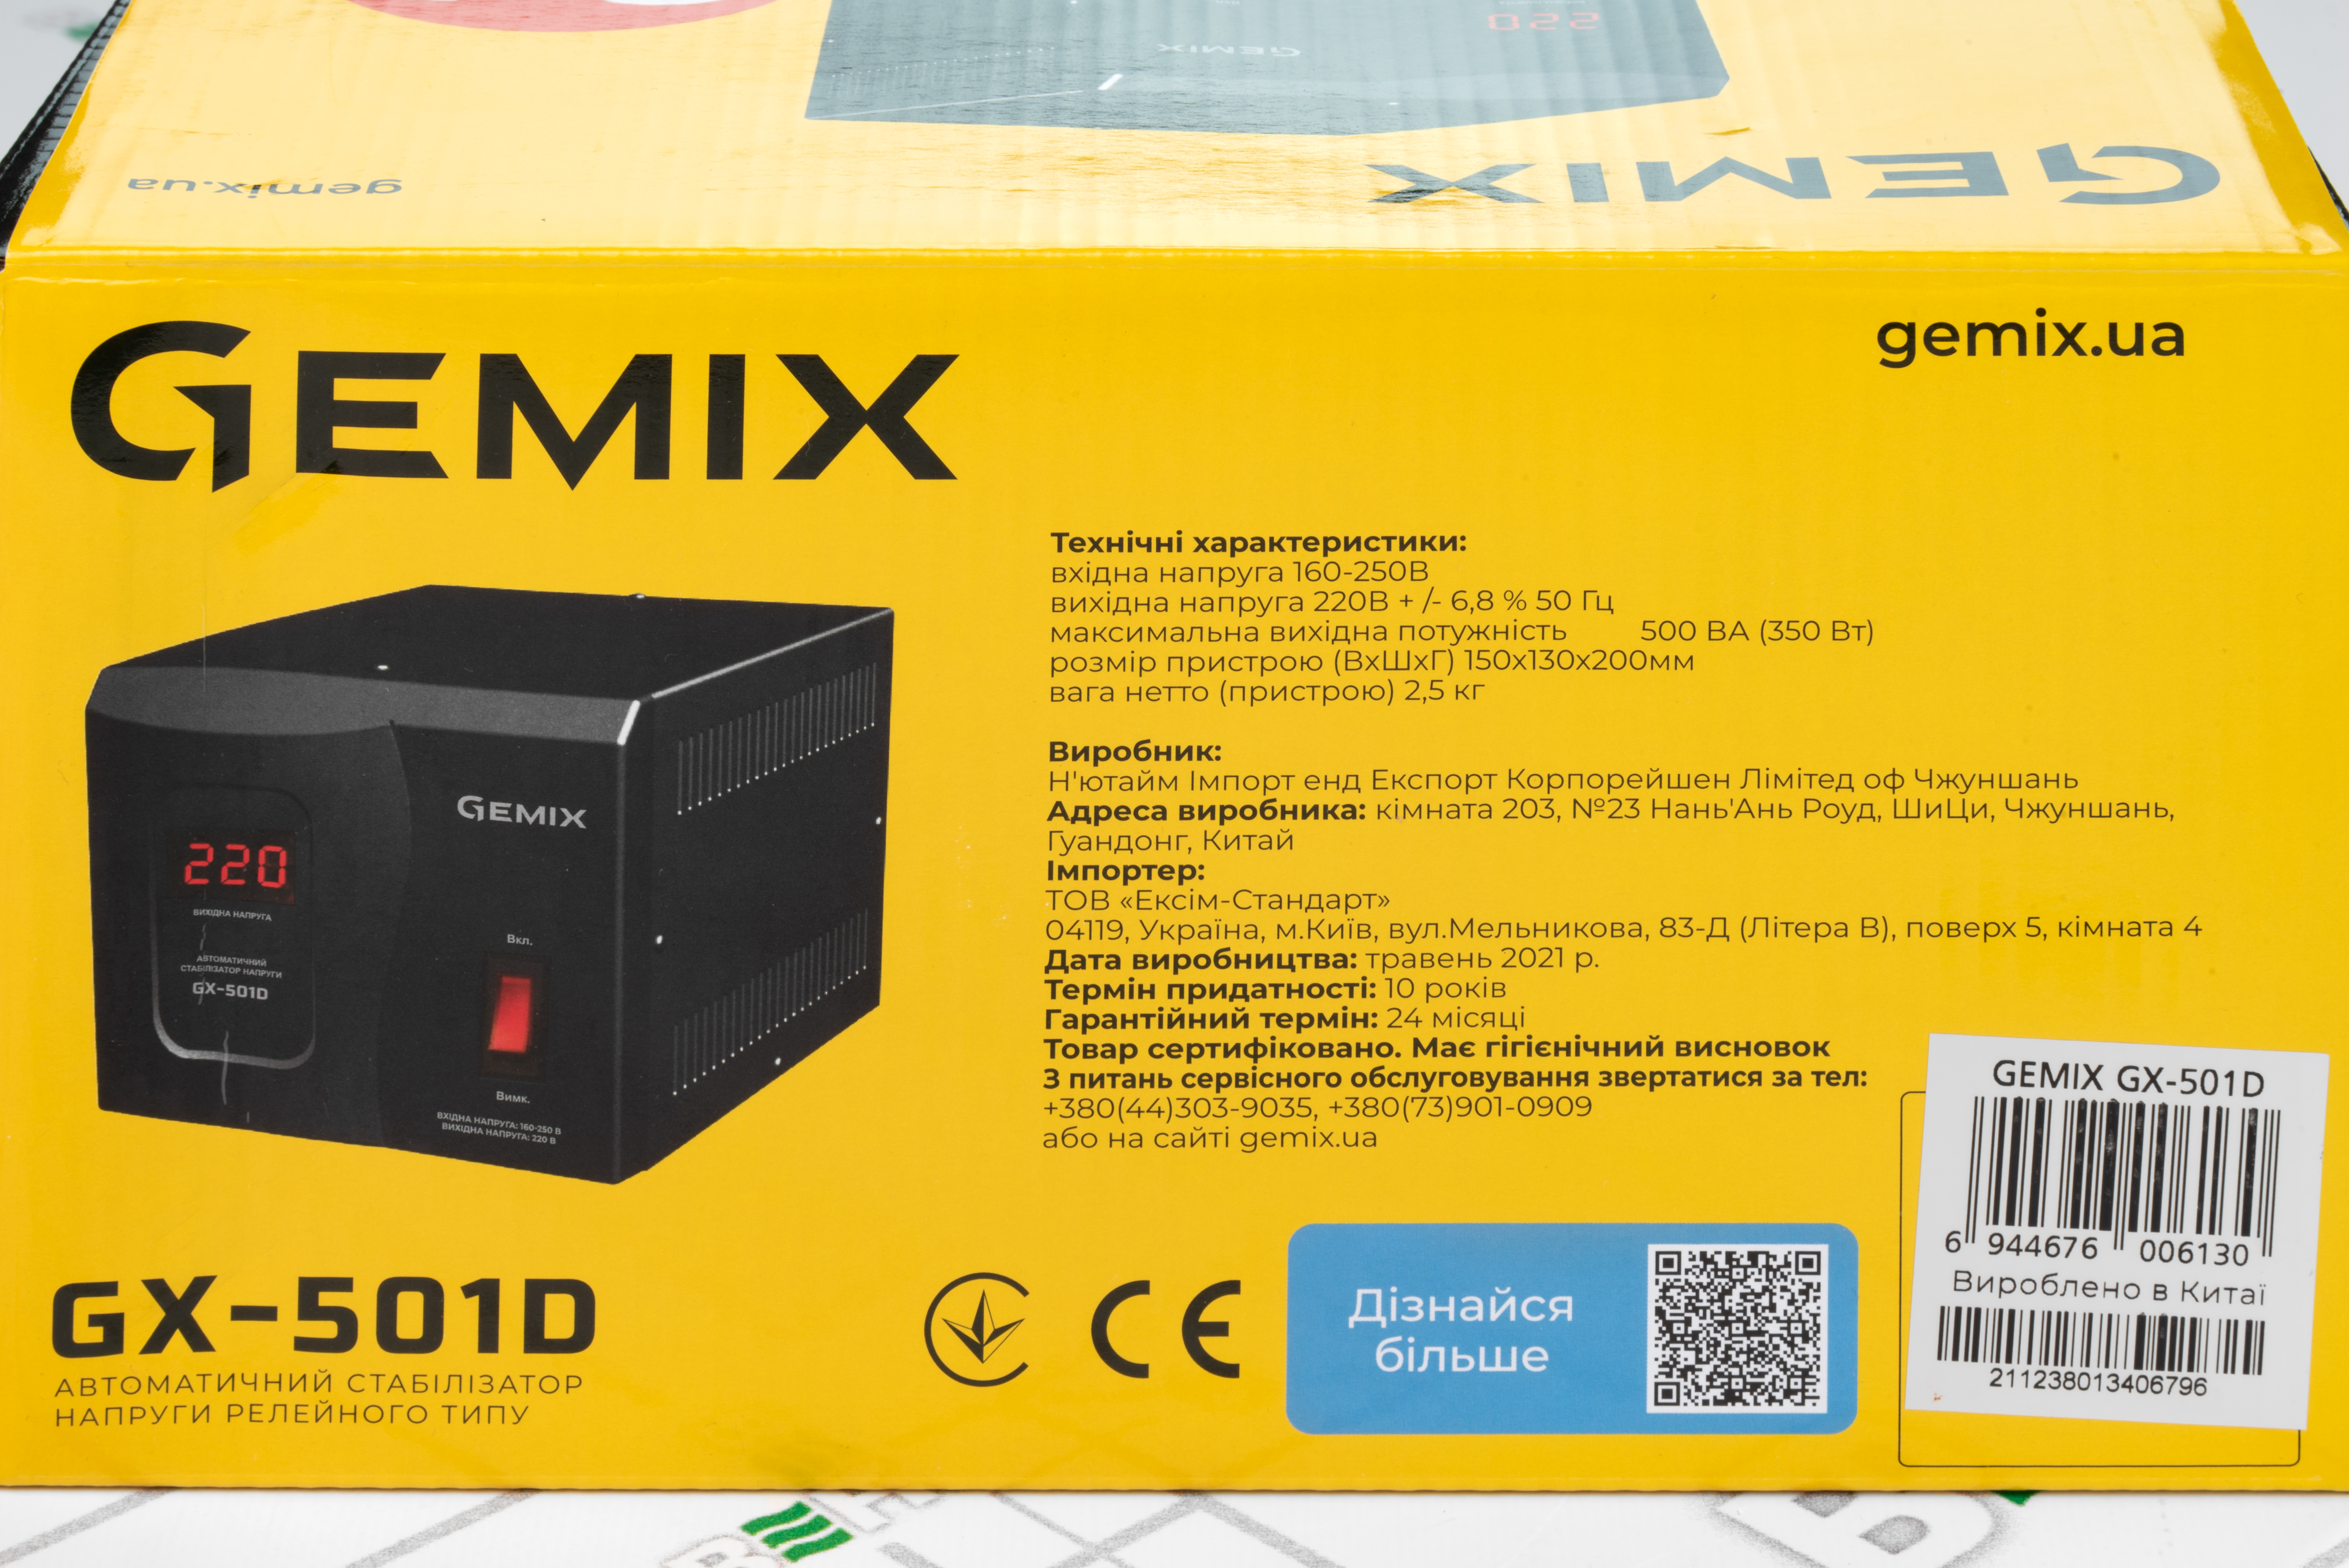 Gemix GX-501D в магазине в Киеве - фото 10